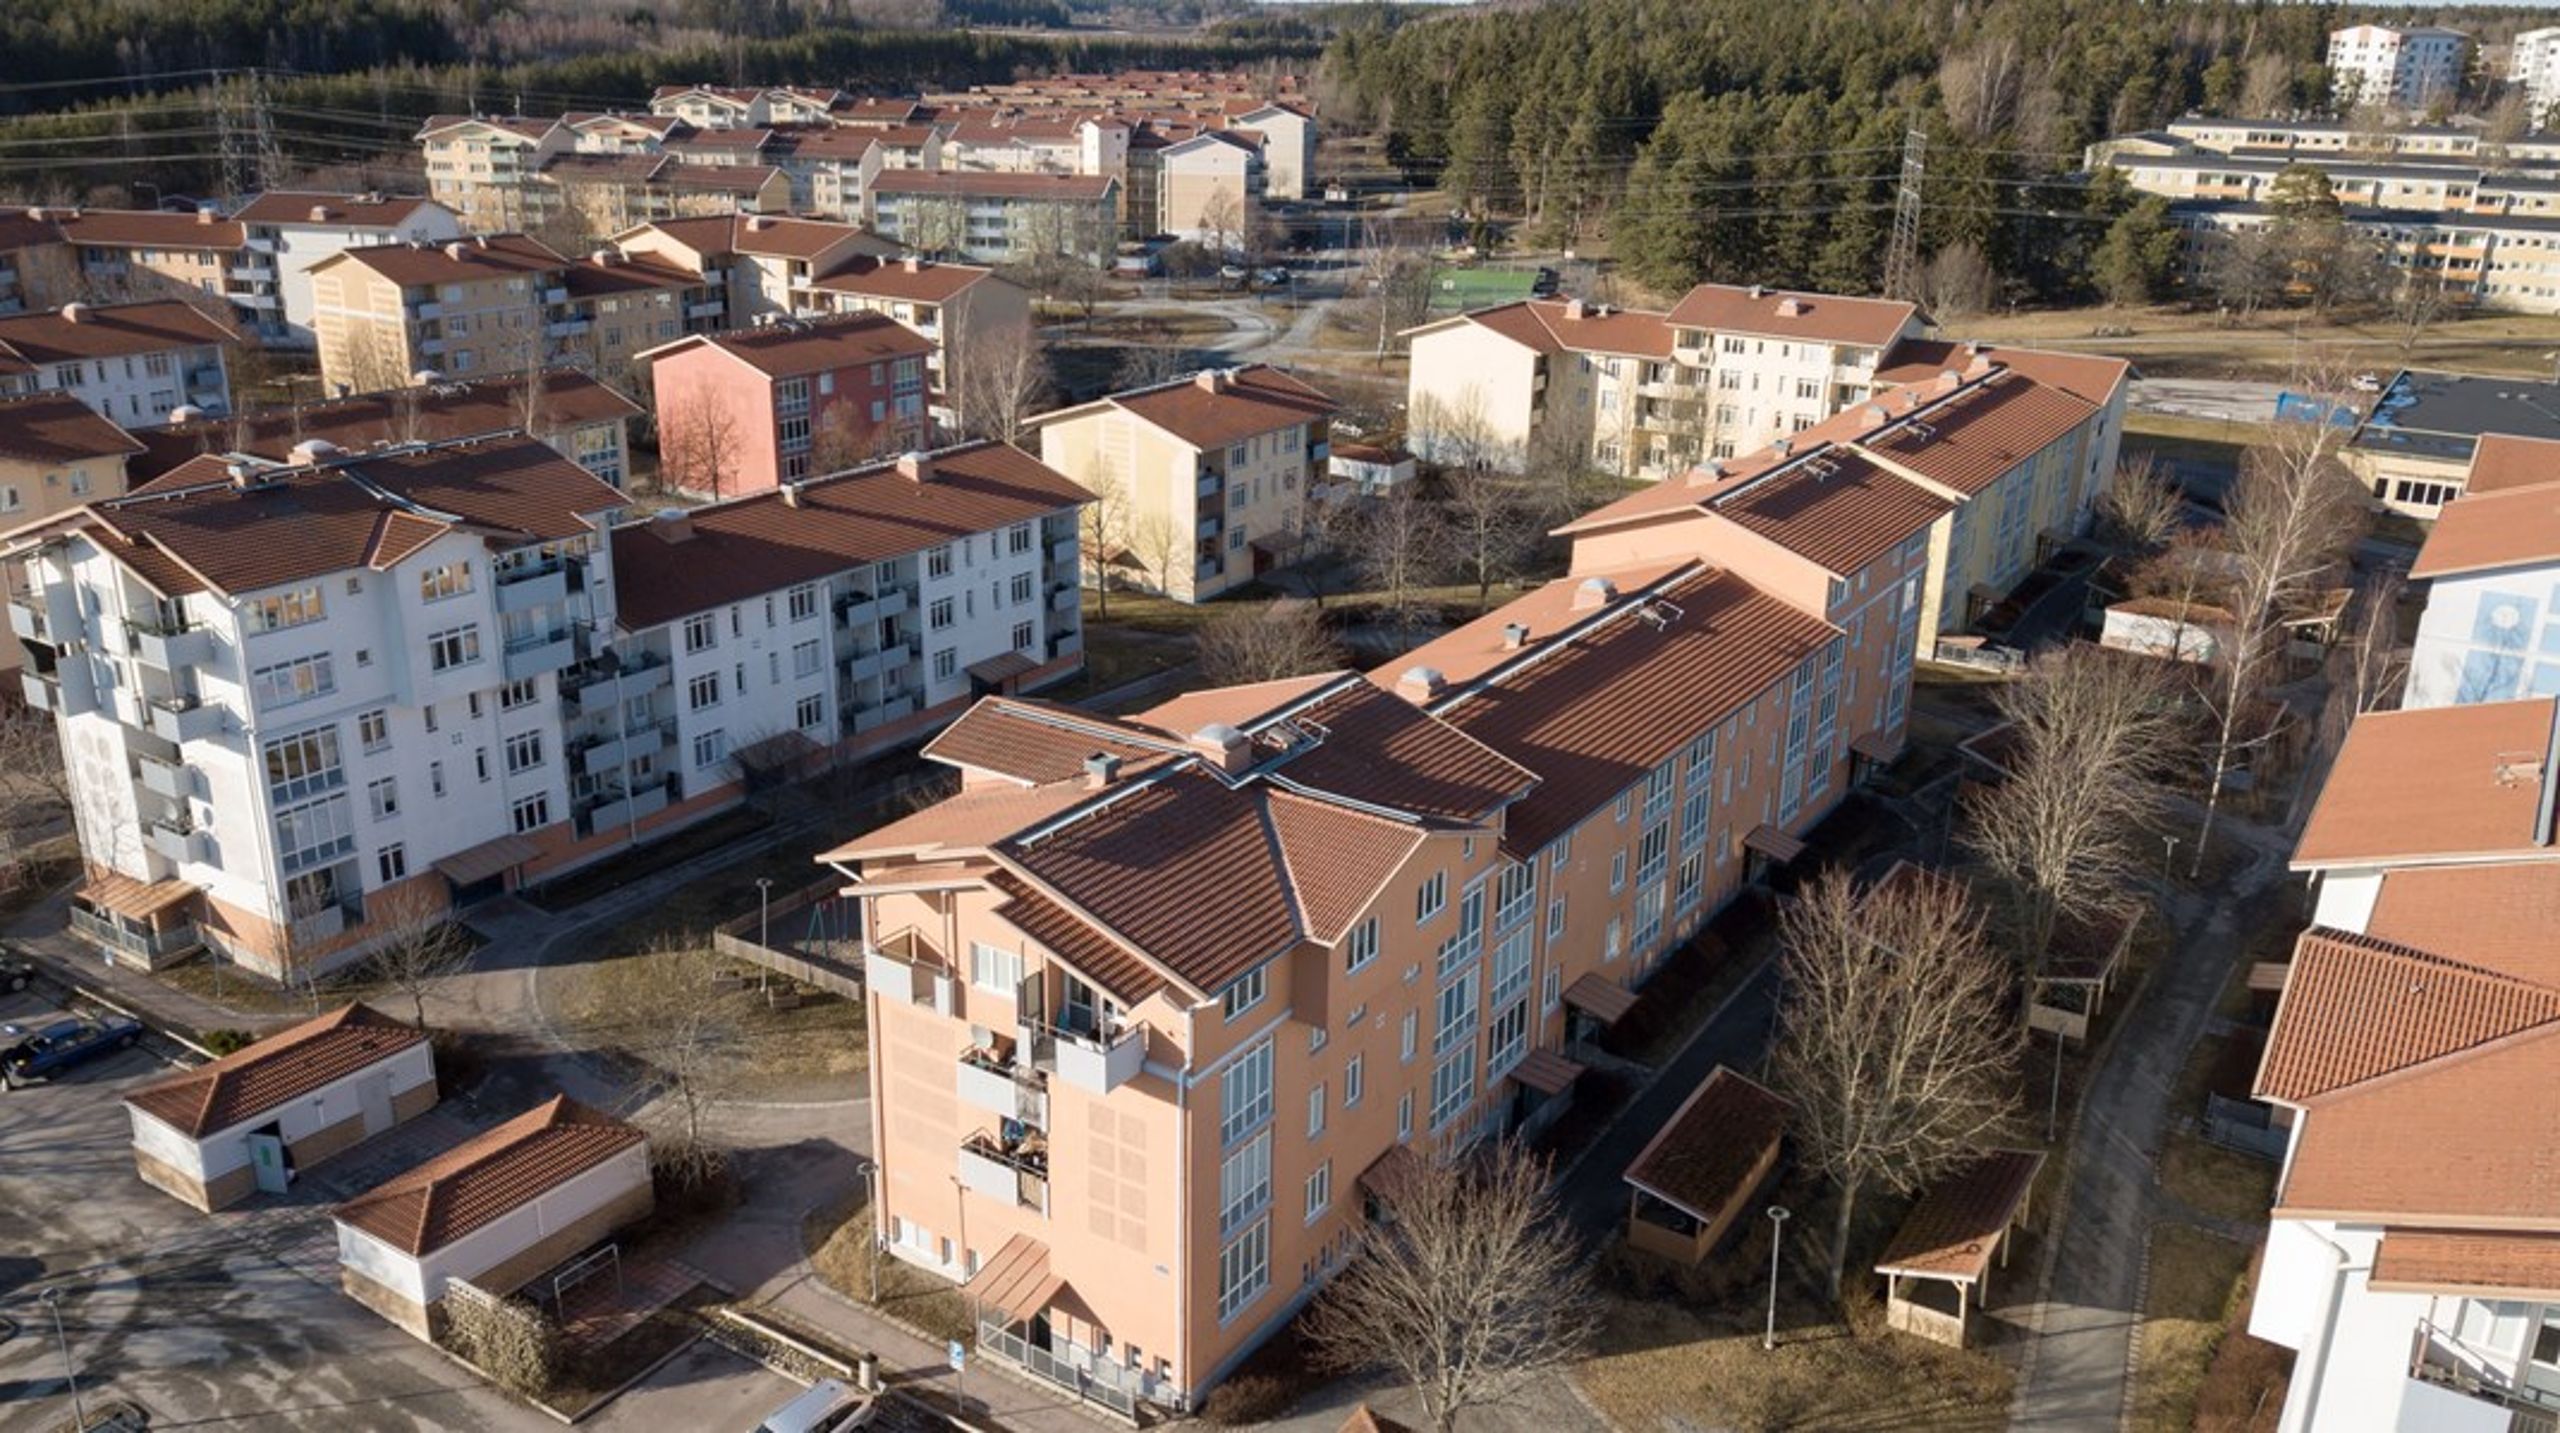 ”Den svenska bostadsmarknaden präglas av djupgående strukturella problem som måste lösas.”